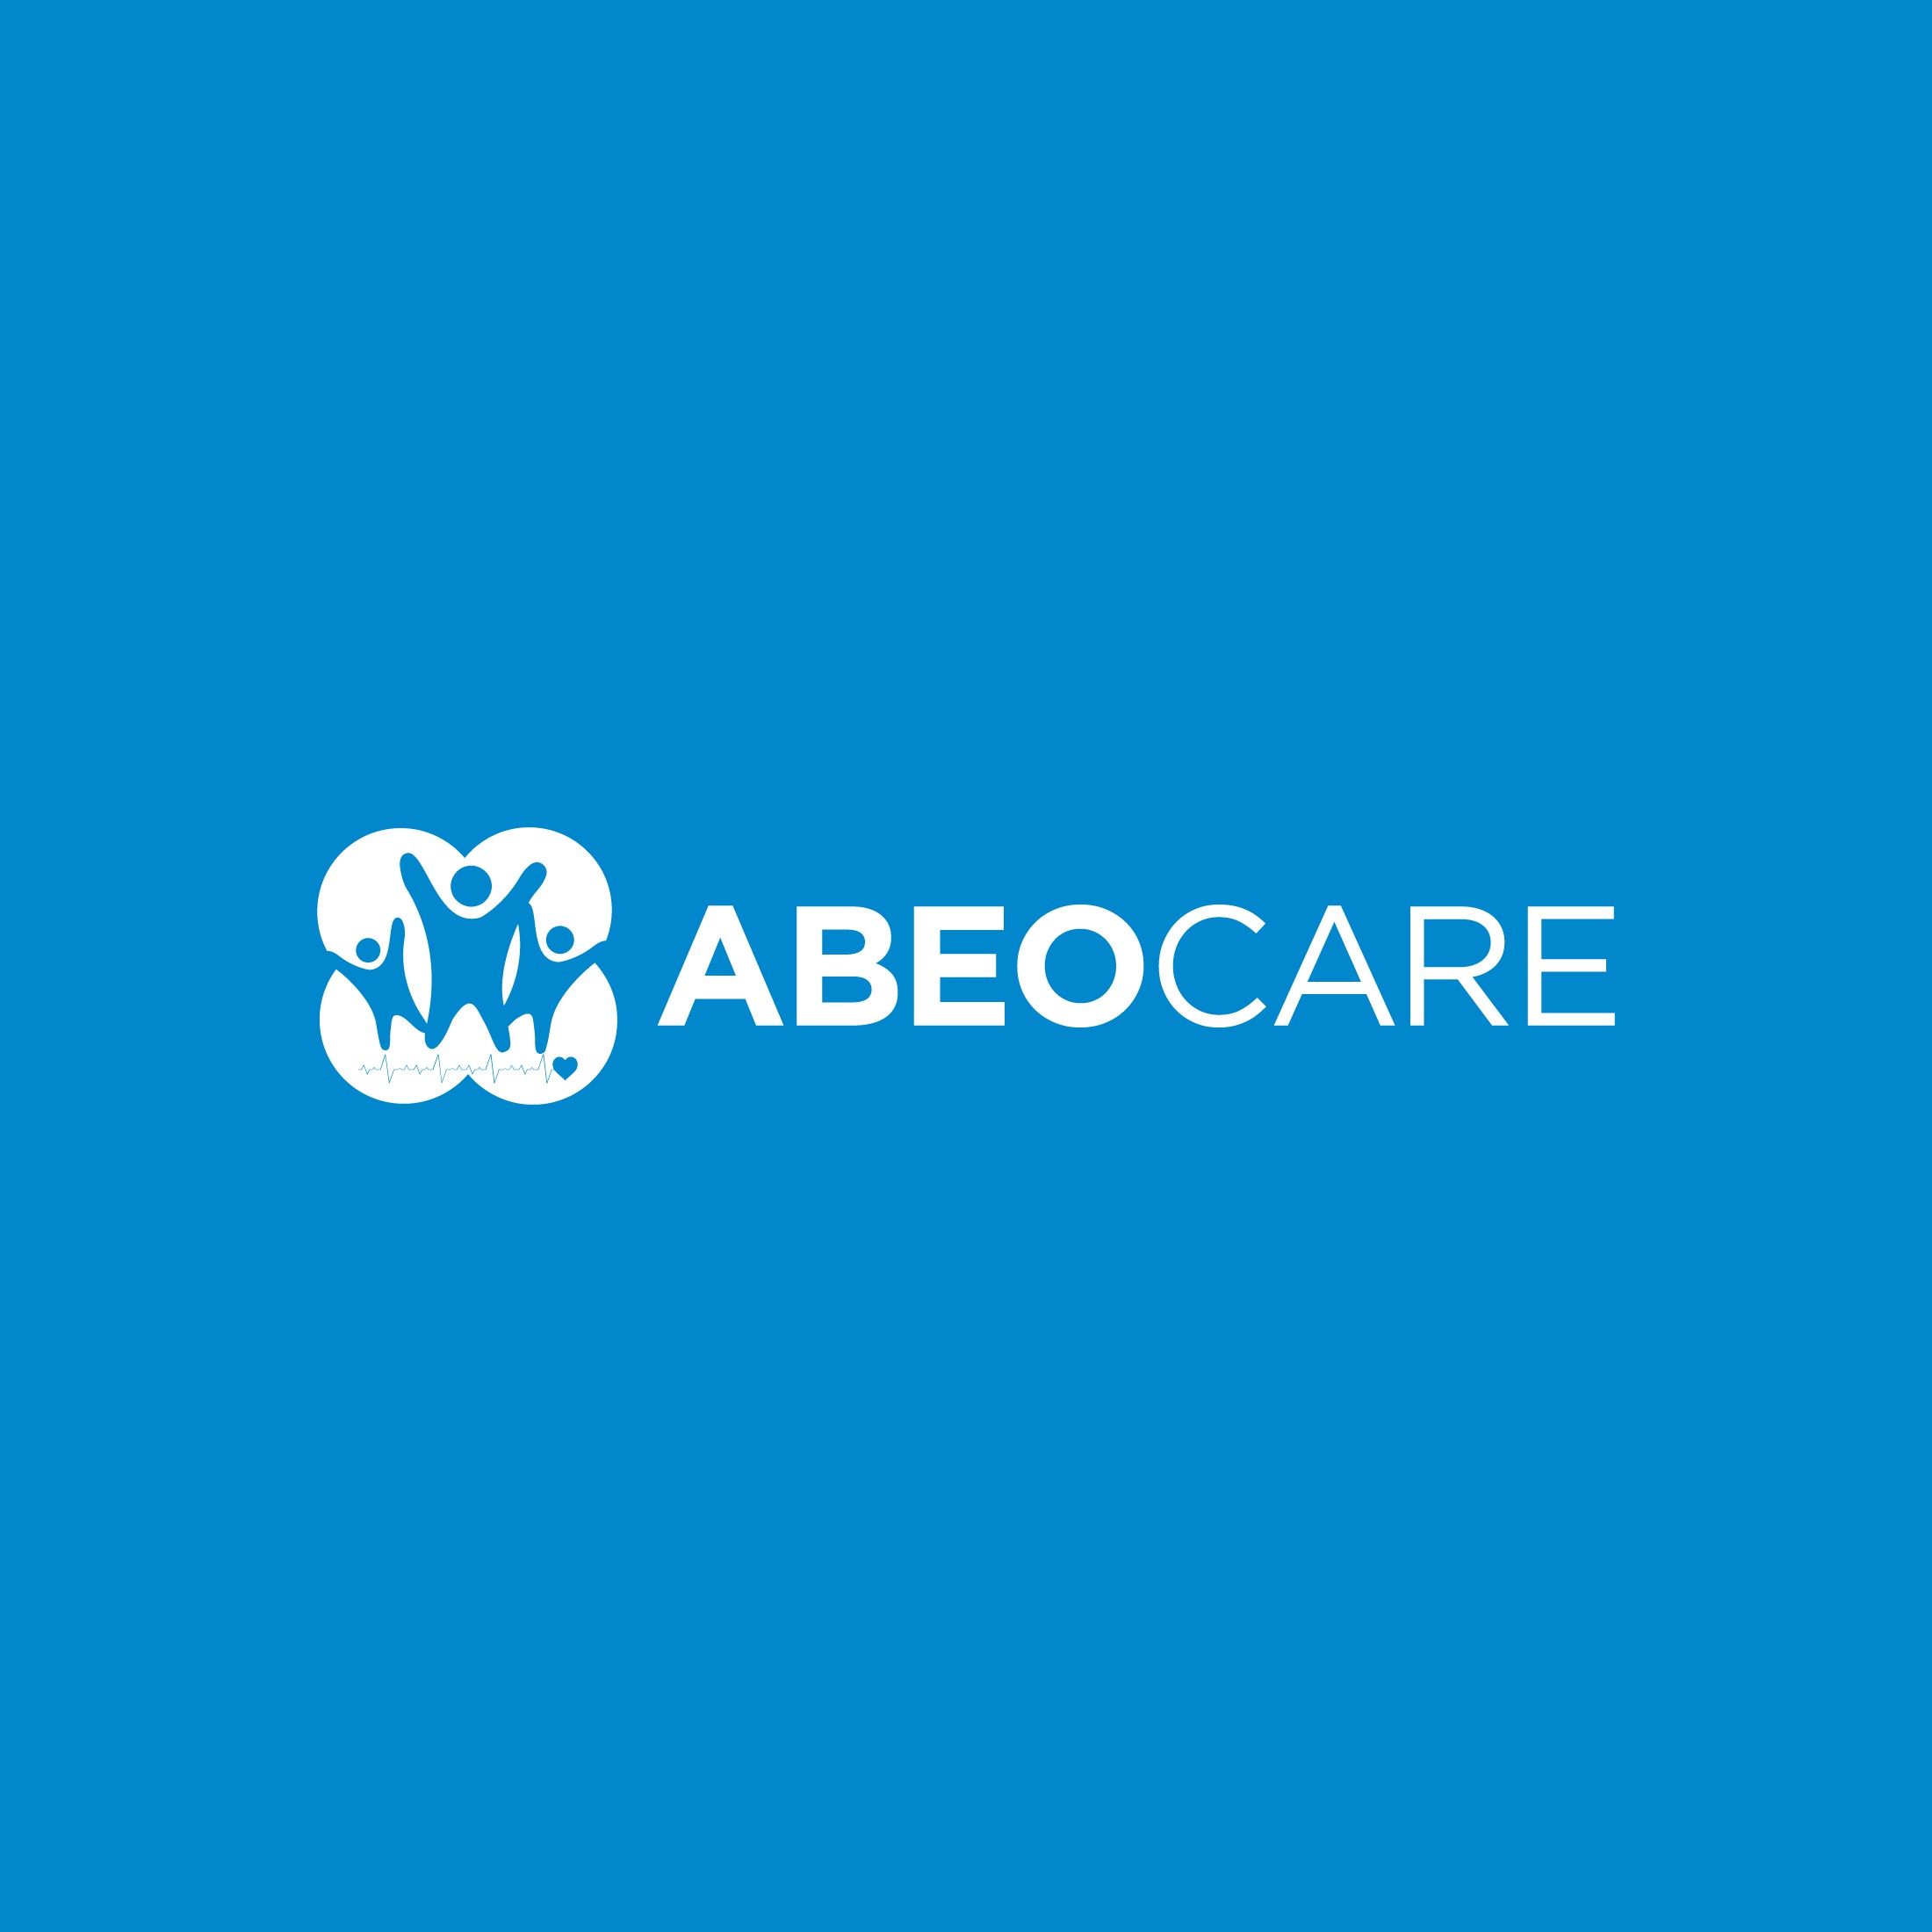 ABEOCARE品牌文具和指导发展